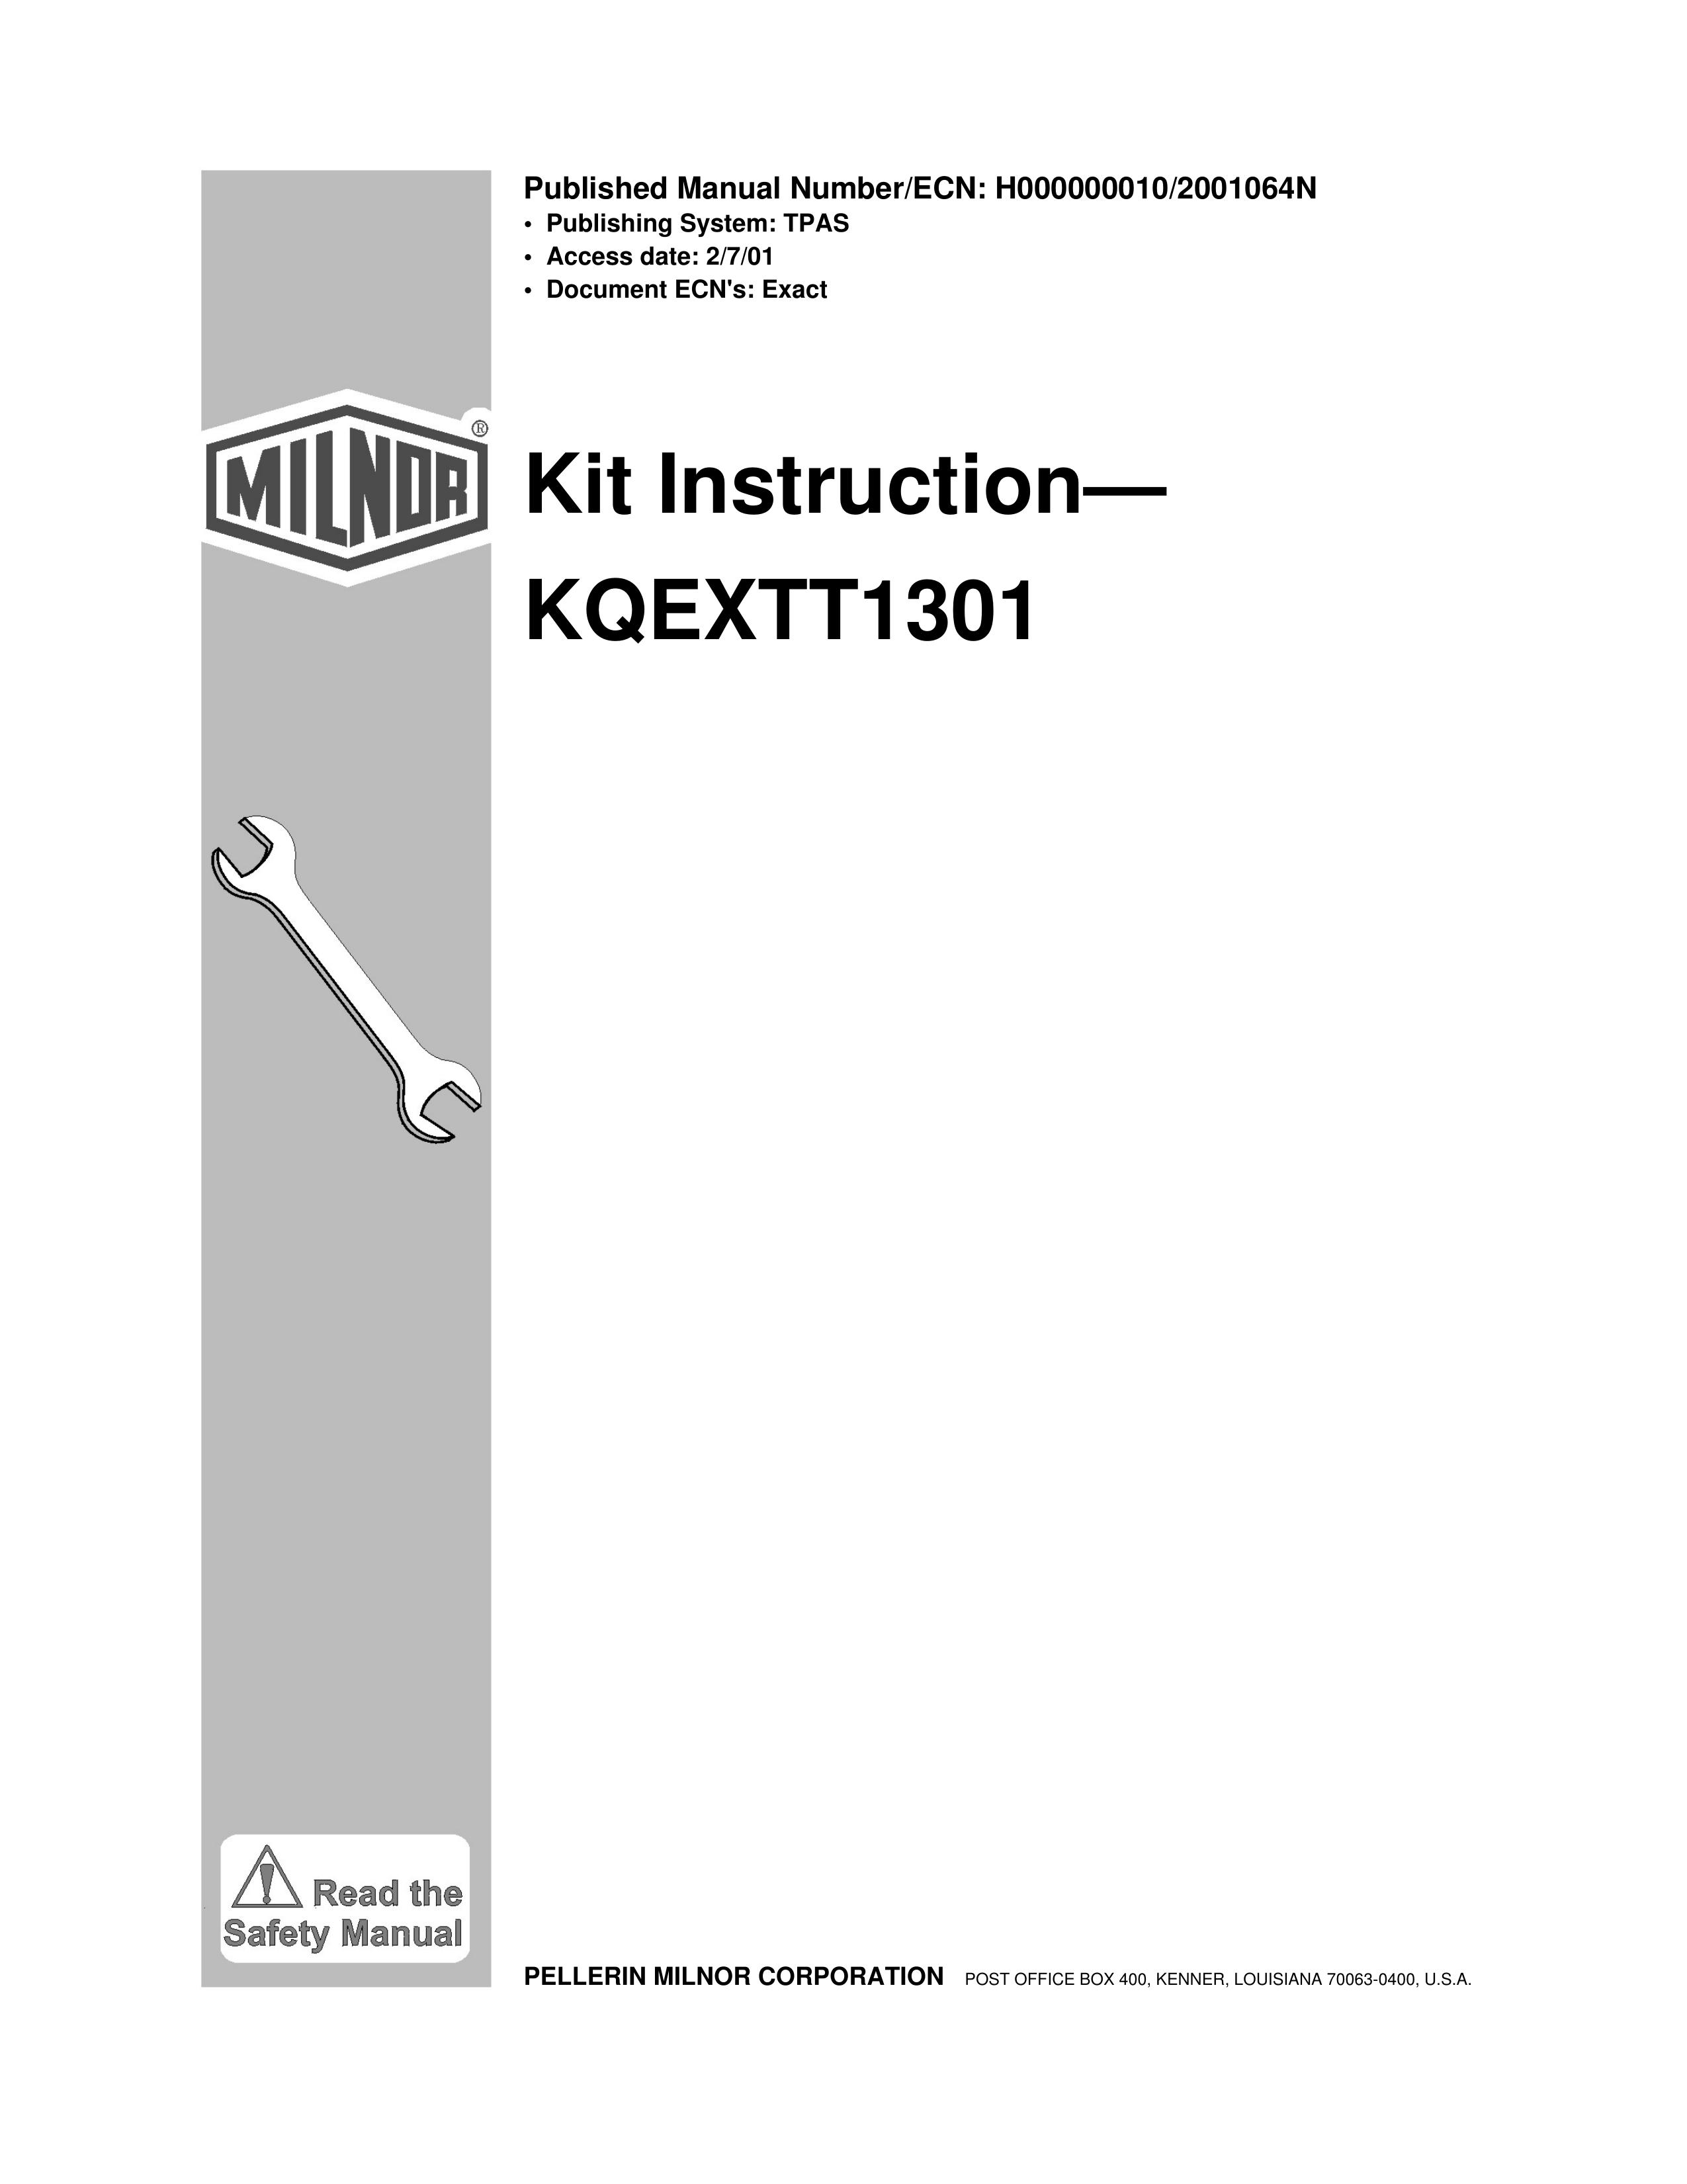 Milnor KQEXTT1301 Refrigerator User Manual